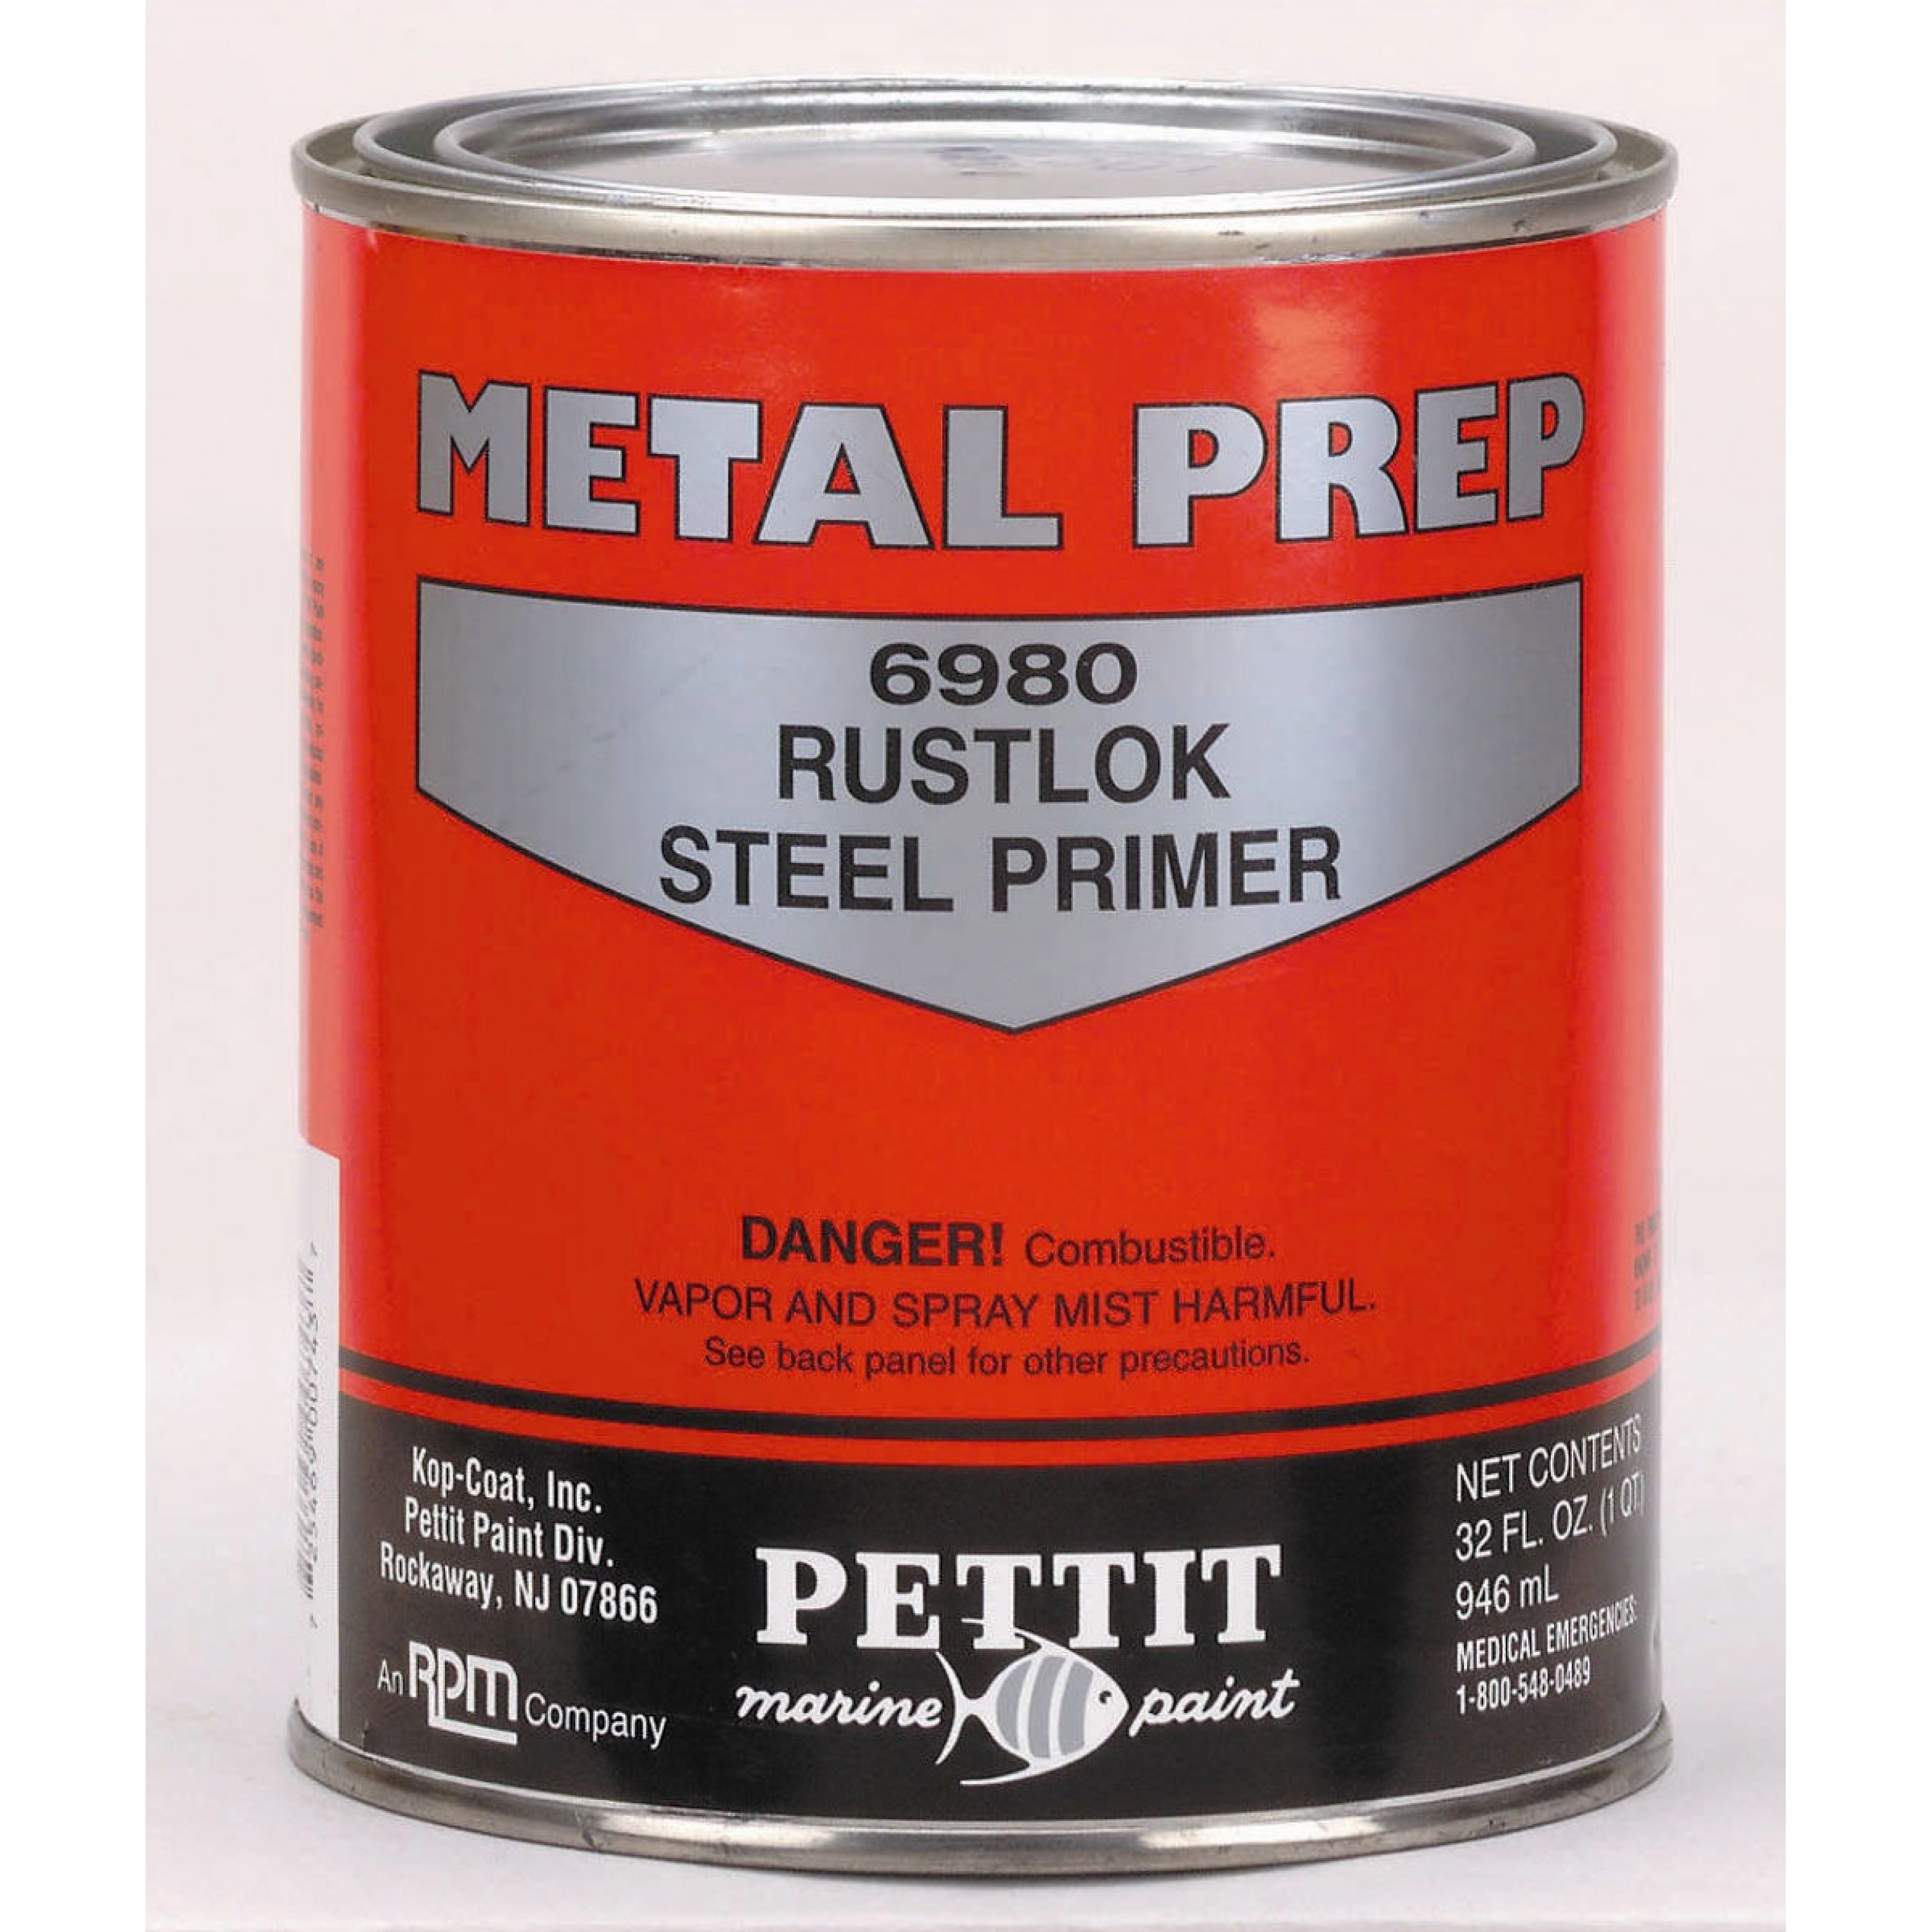 PETTIT 6980 METAL PREP RUSTLOK STEEL PRIMER